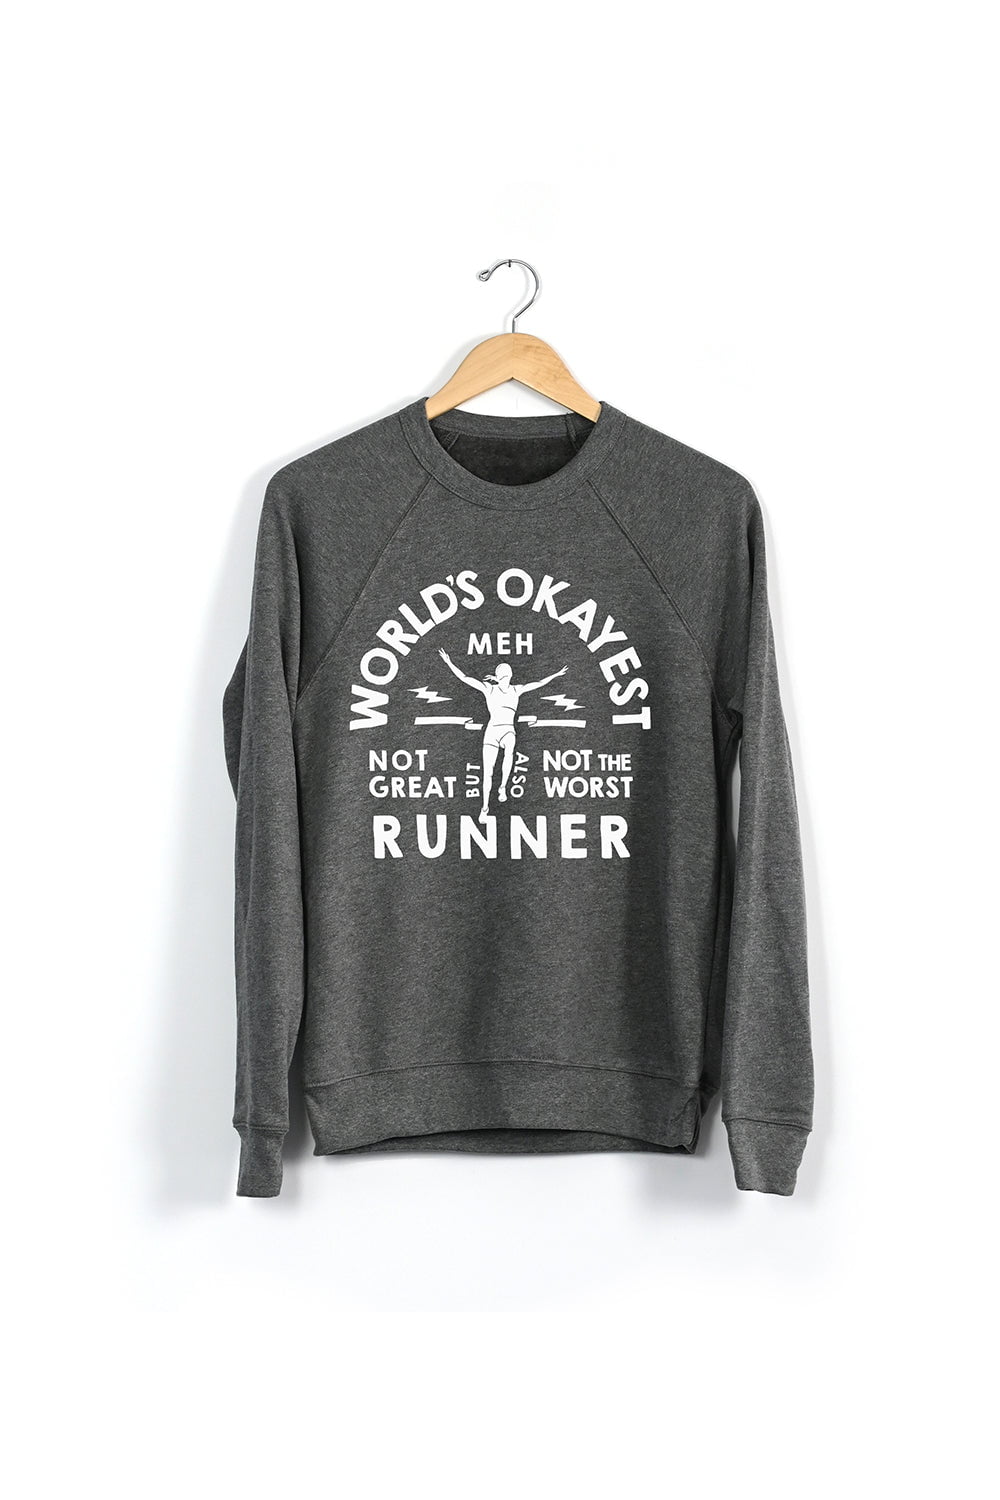 Sarah Marie Design Studio Sweatshirt World's Okayest Runner Sweatshirt